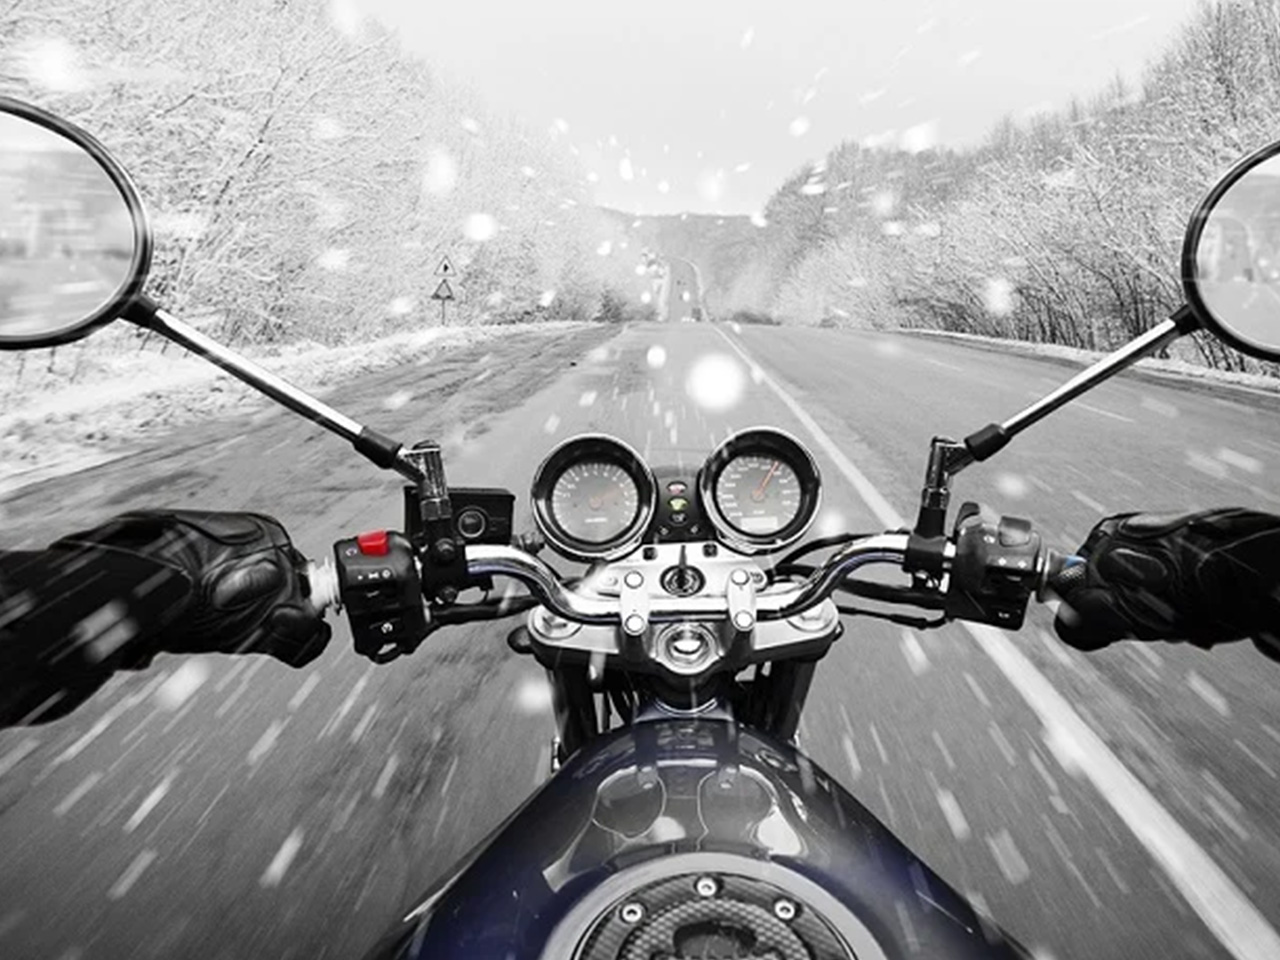 winterproof your bike during winter